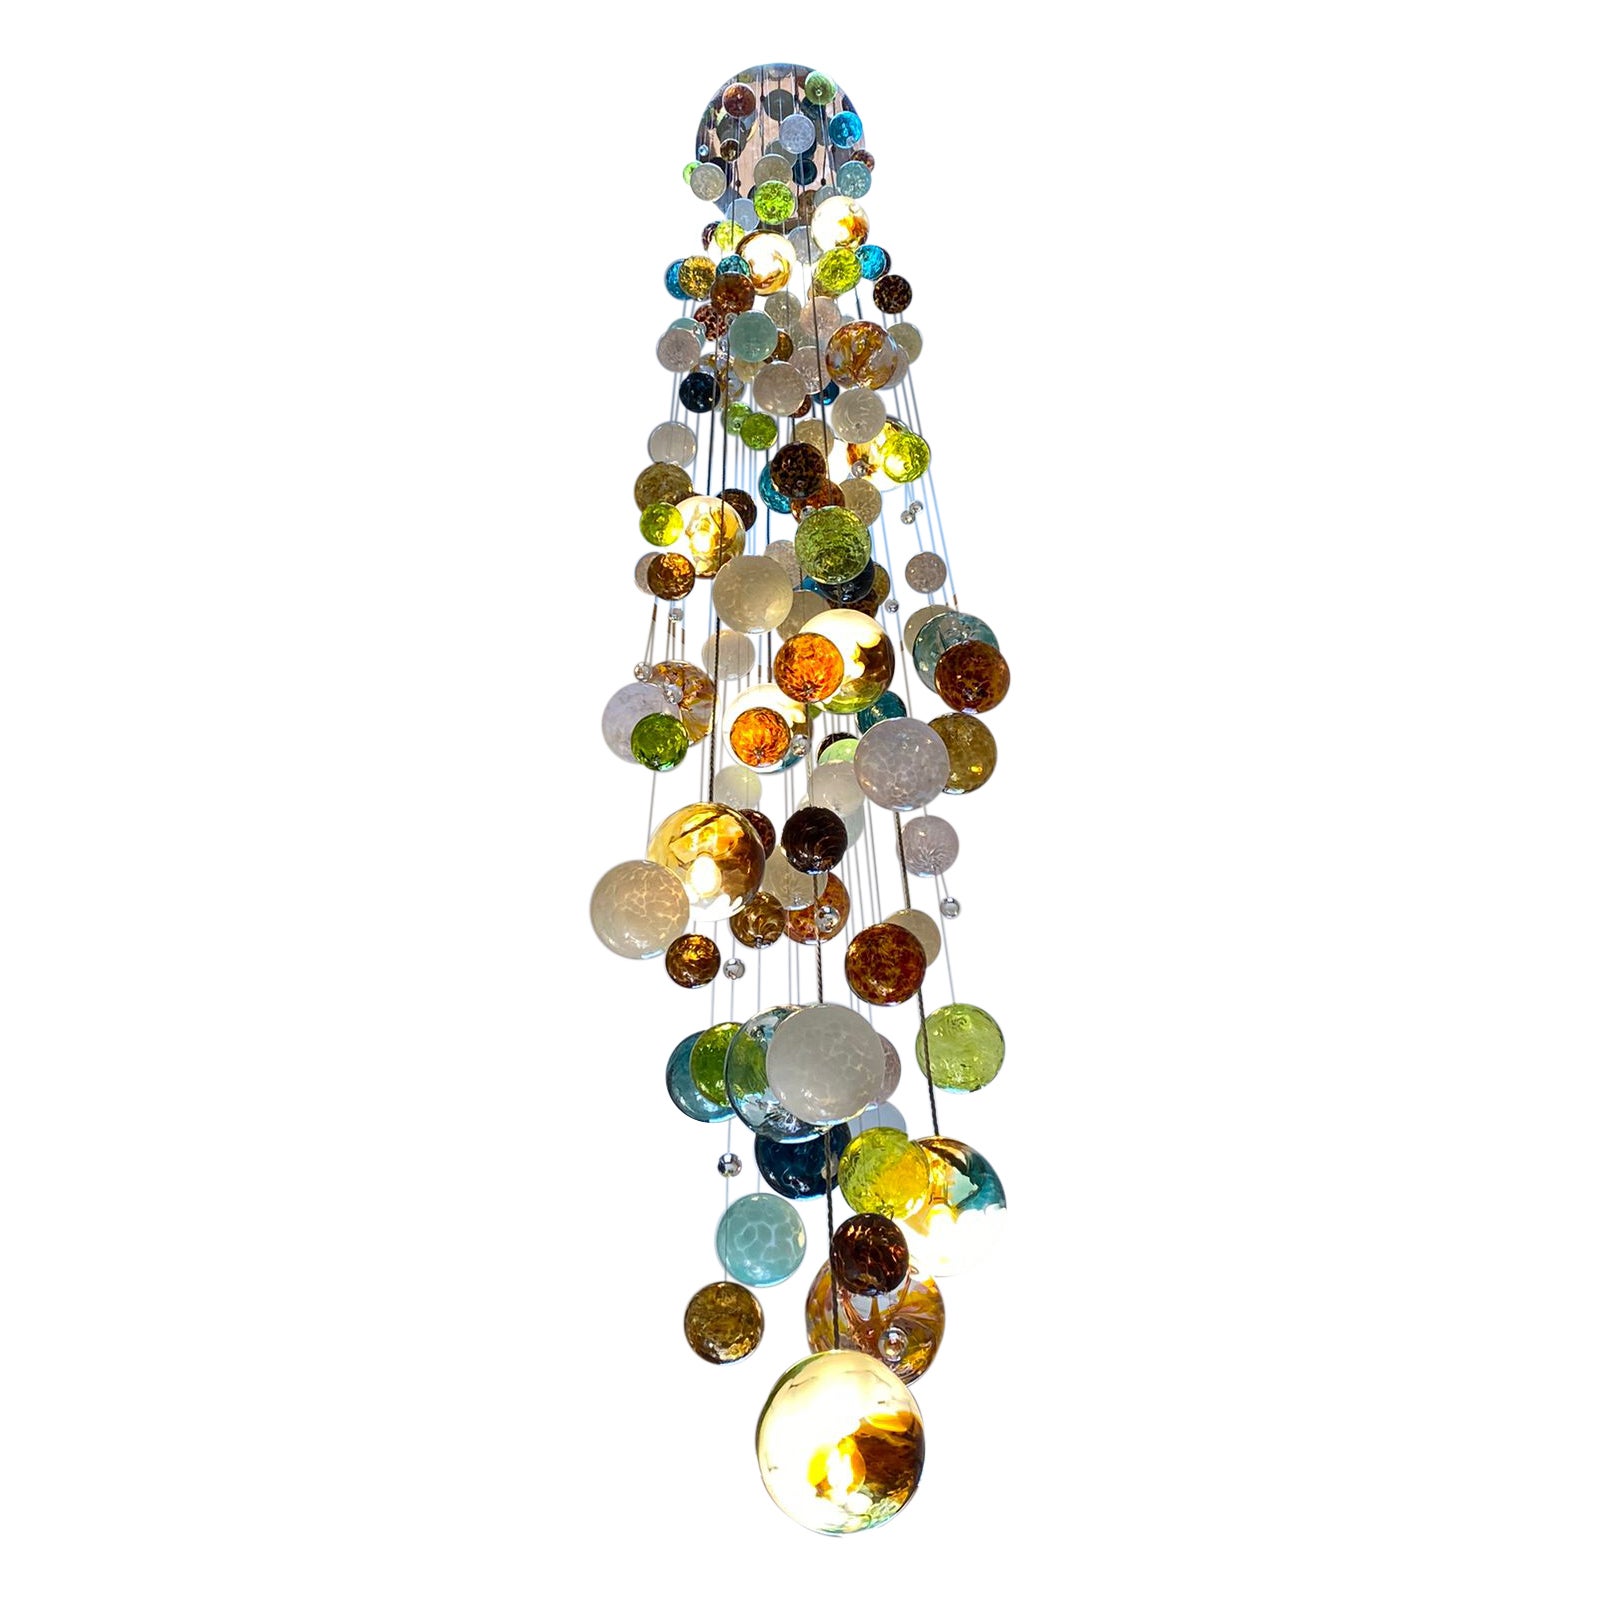 Kaskaden-Kronleuchter von Roast mit über 150 mundgeblasenen Glaskugeln